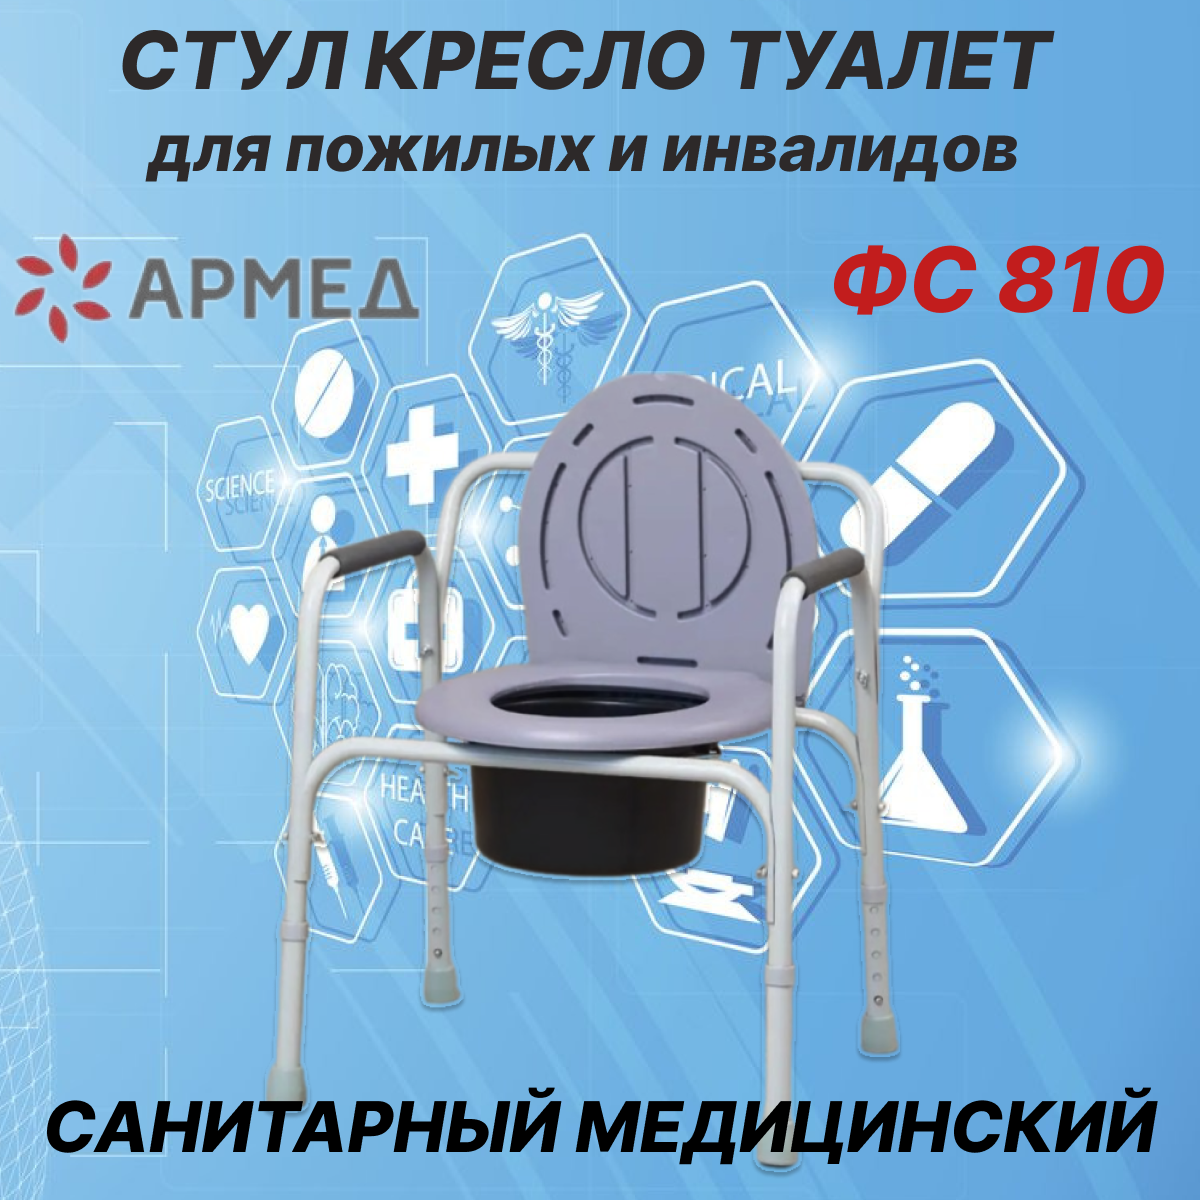 Стул кресло туалет для инвалидов и пожилых Армед ФС 810 санитарный медицинский унитаз